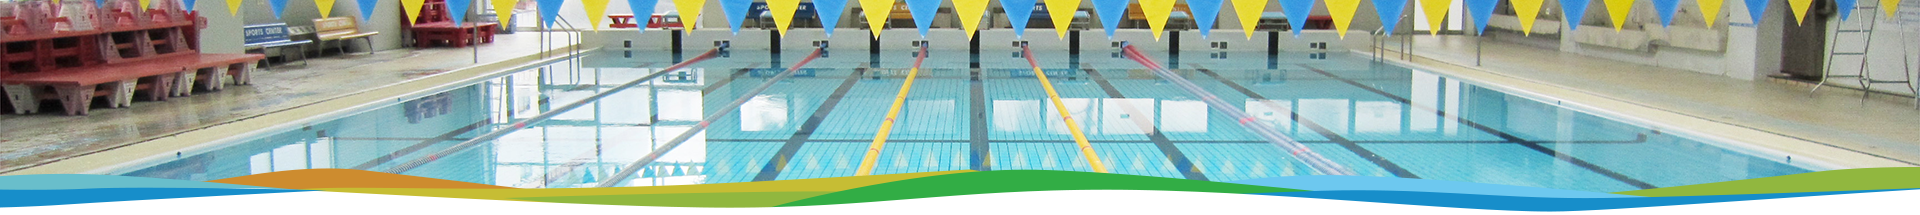 【緊急告知】水曜日にスポーツセンターの水泳教室を開催いたします!!!